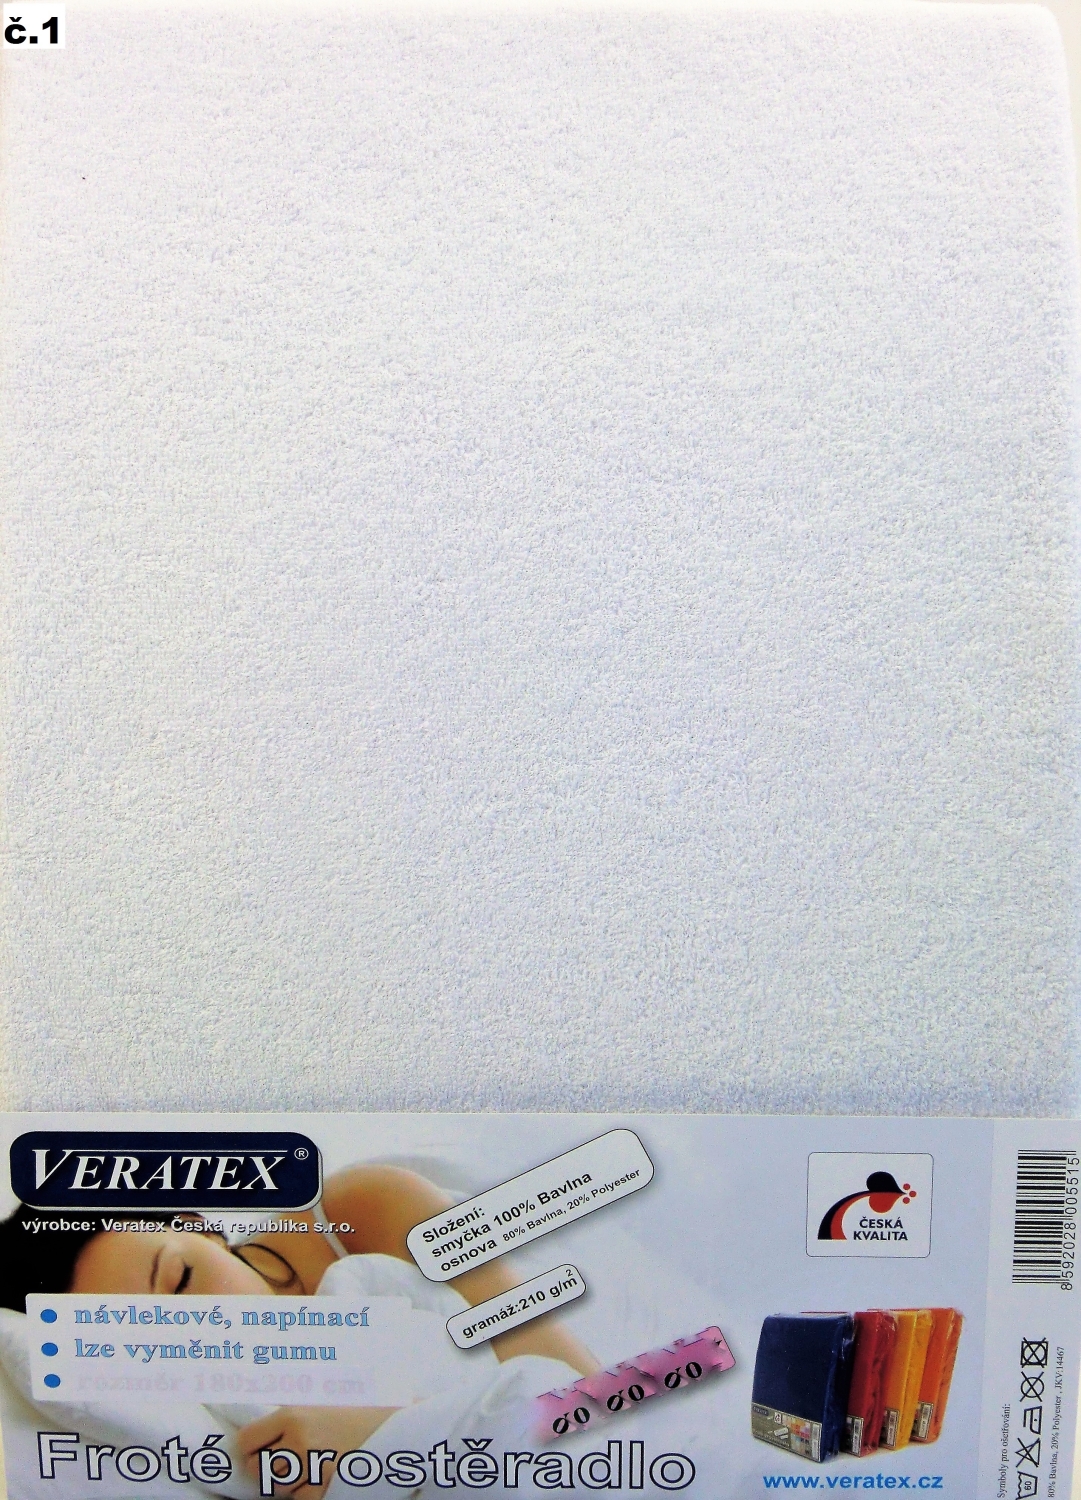 Veratex Froté prostěradlo 160x220/16 cm (č. 1-bílá) 160 x 220 cm